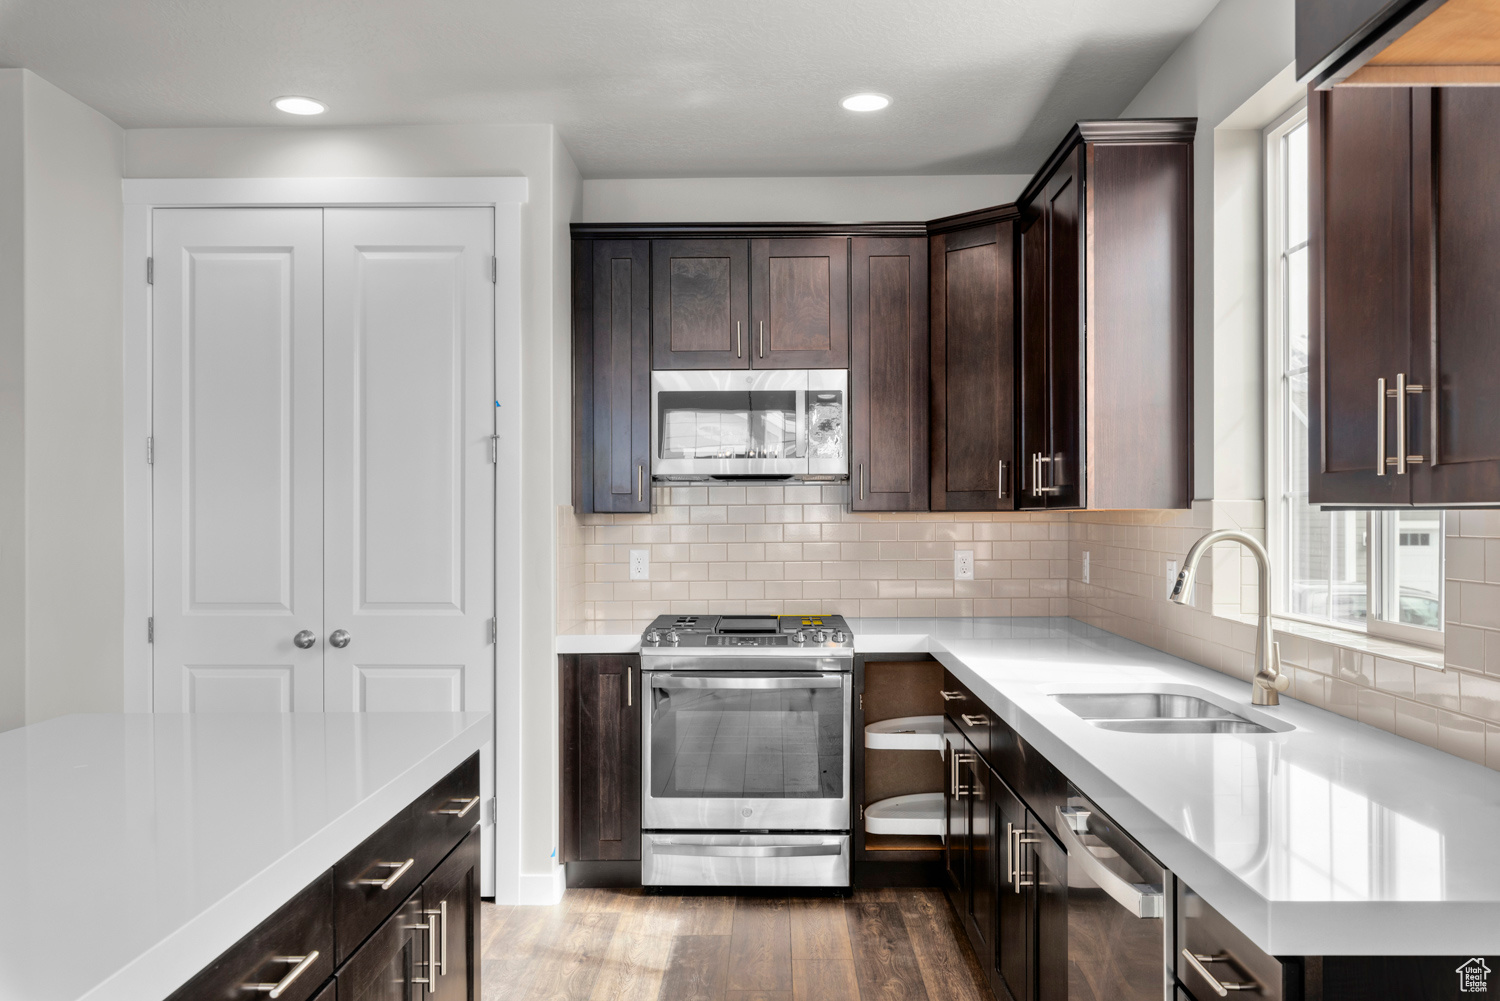 Kitchen featuring appliances with stainless steel finishes, sink, tasteful backsplash, dark wood-type flooring, and dark brown cabinets